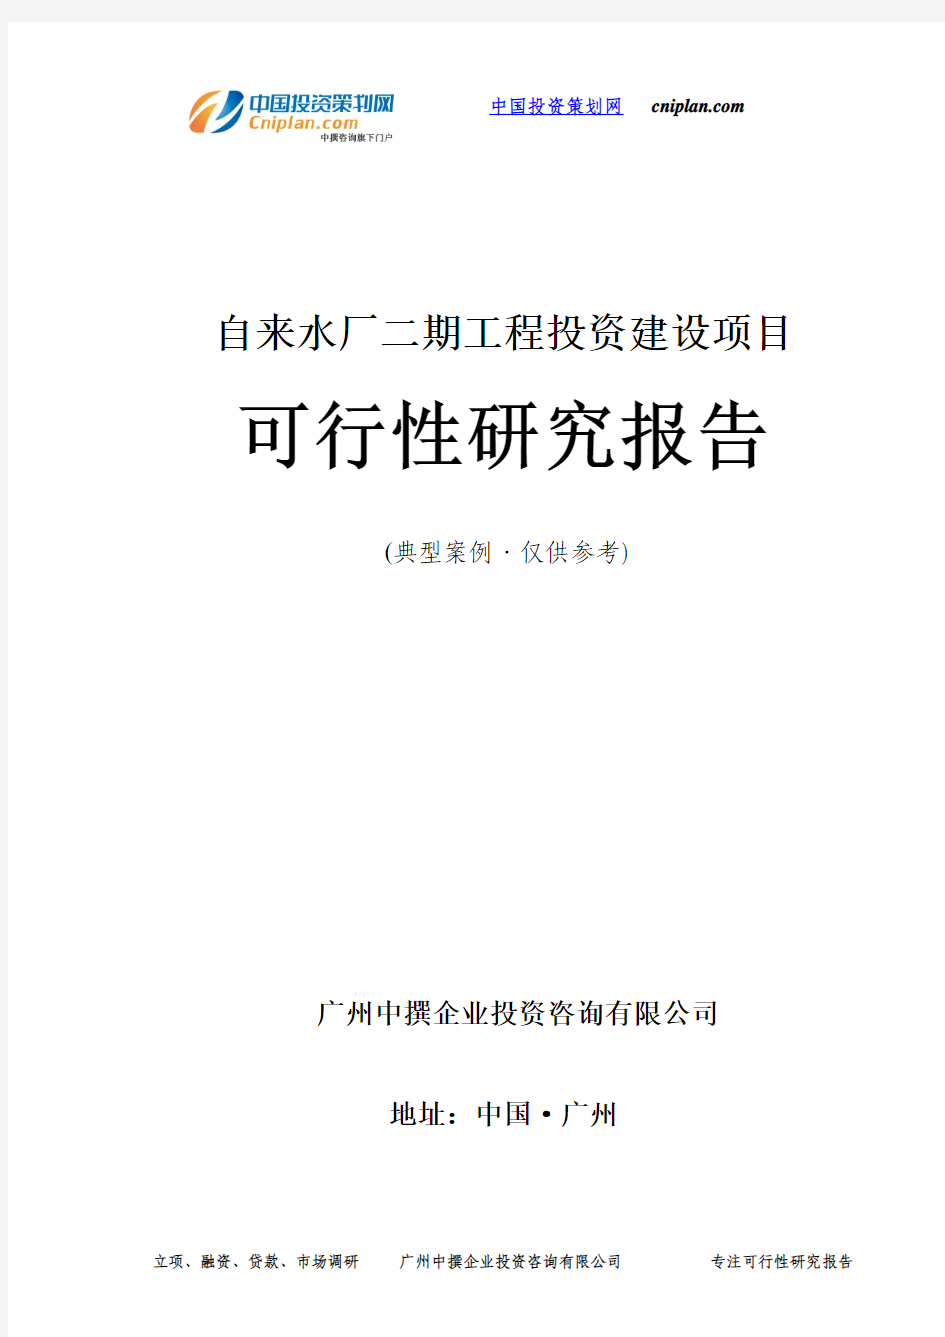 自来水厂二期工程投资建设项目可行性研究报告-广州中撰咨询